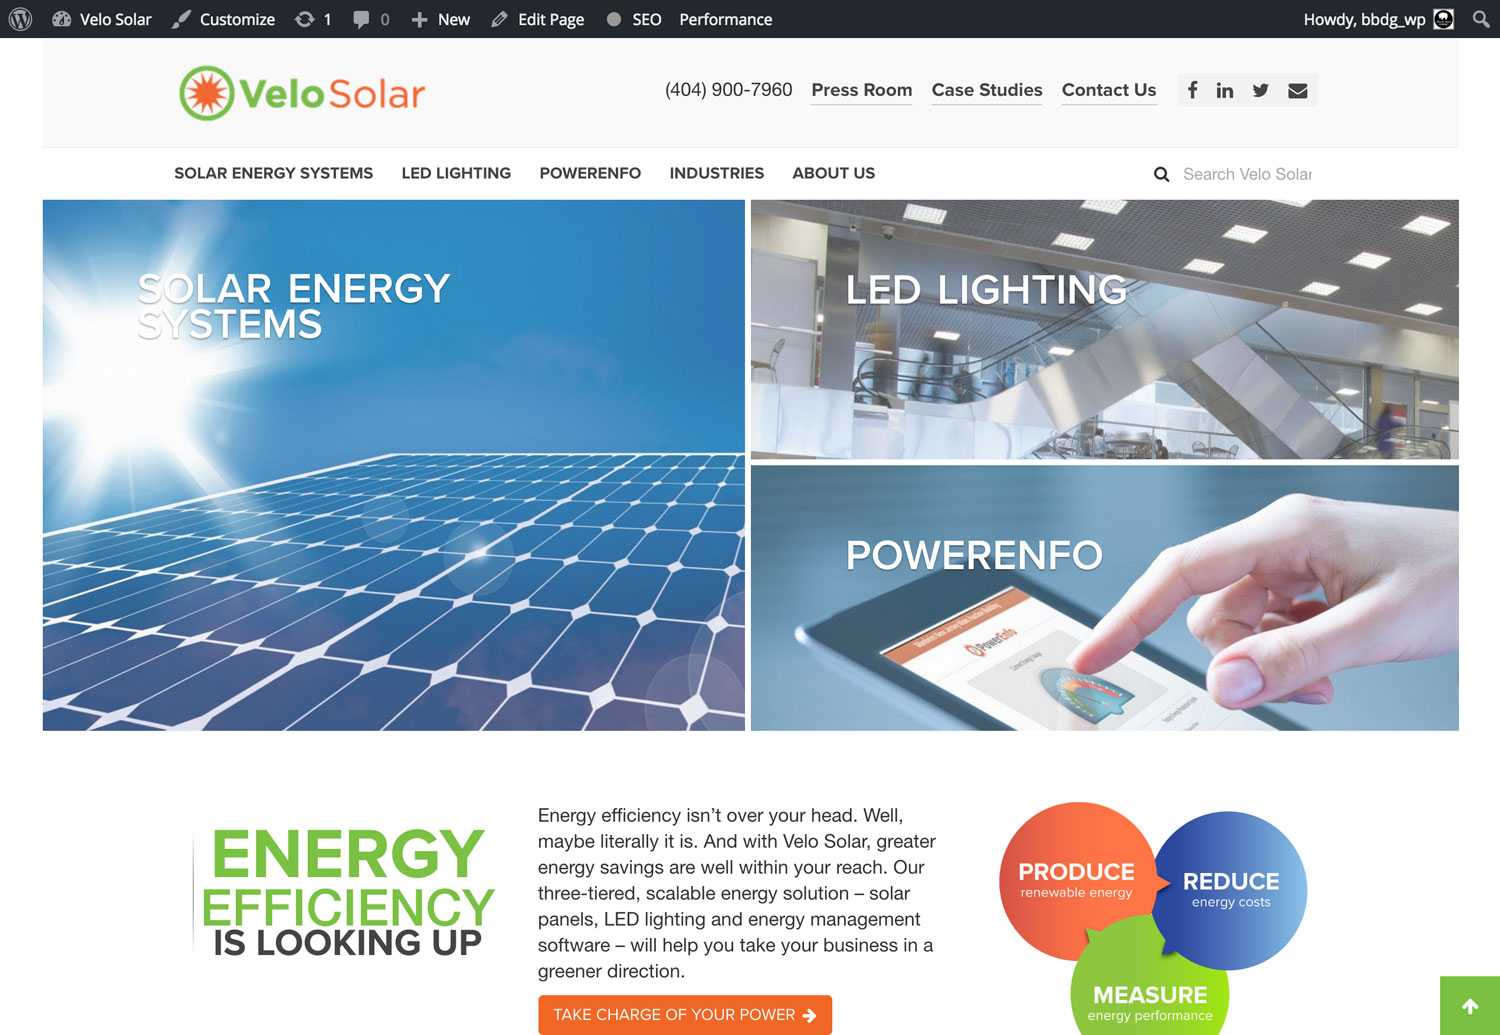 Velosolar Website Design